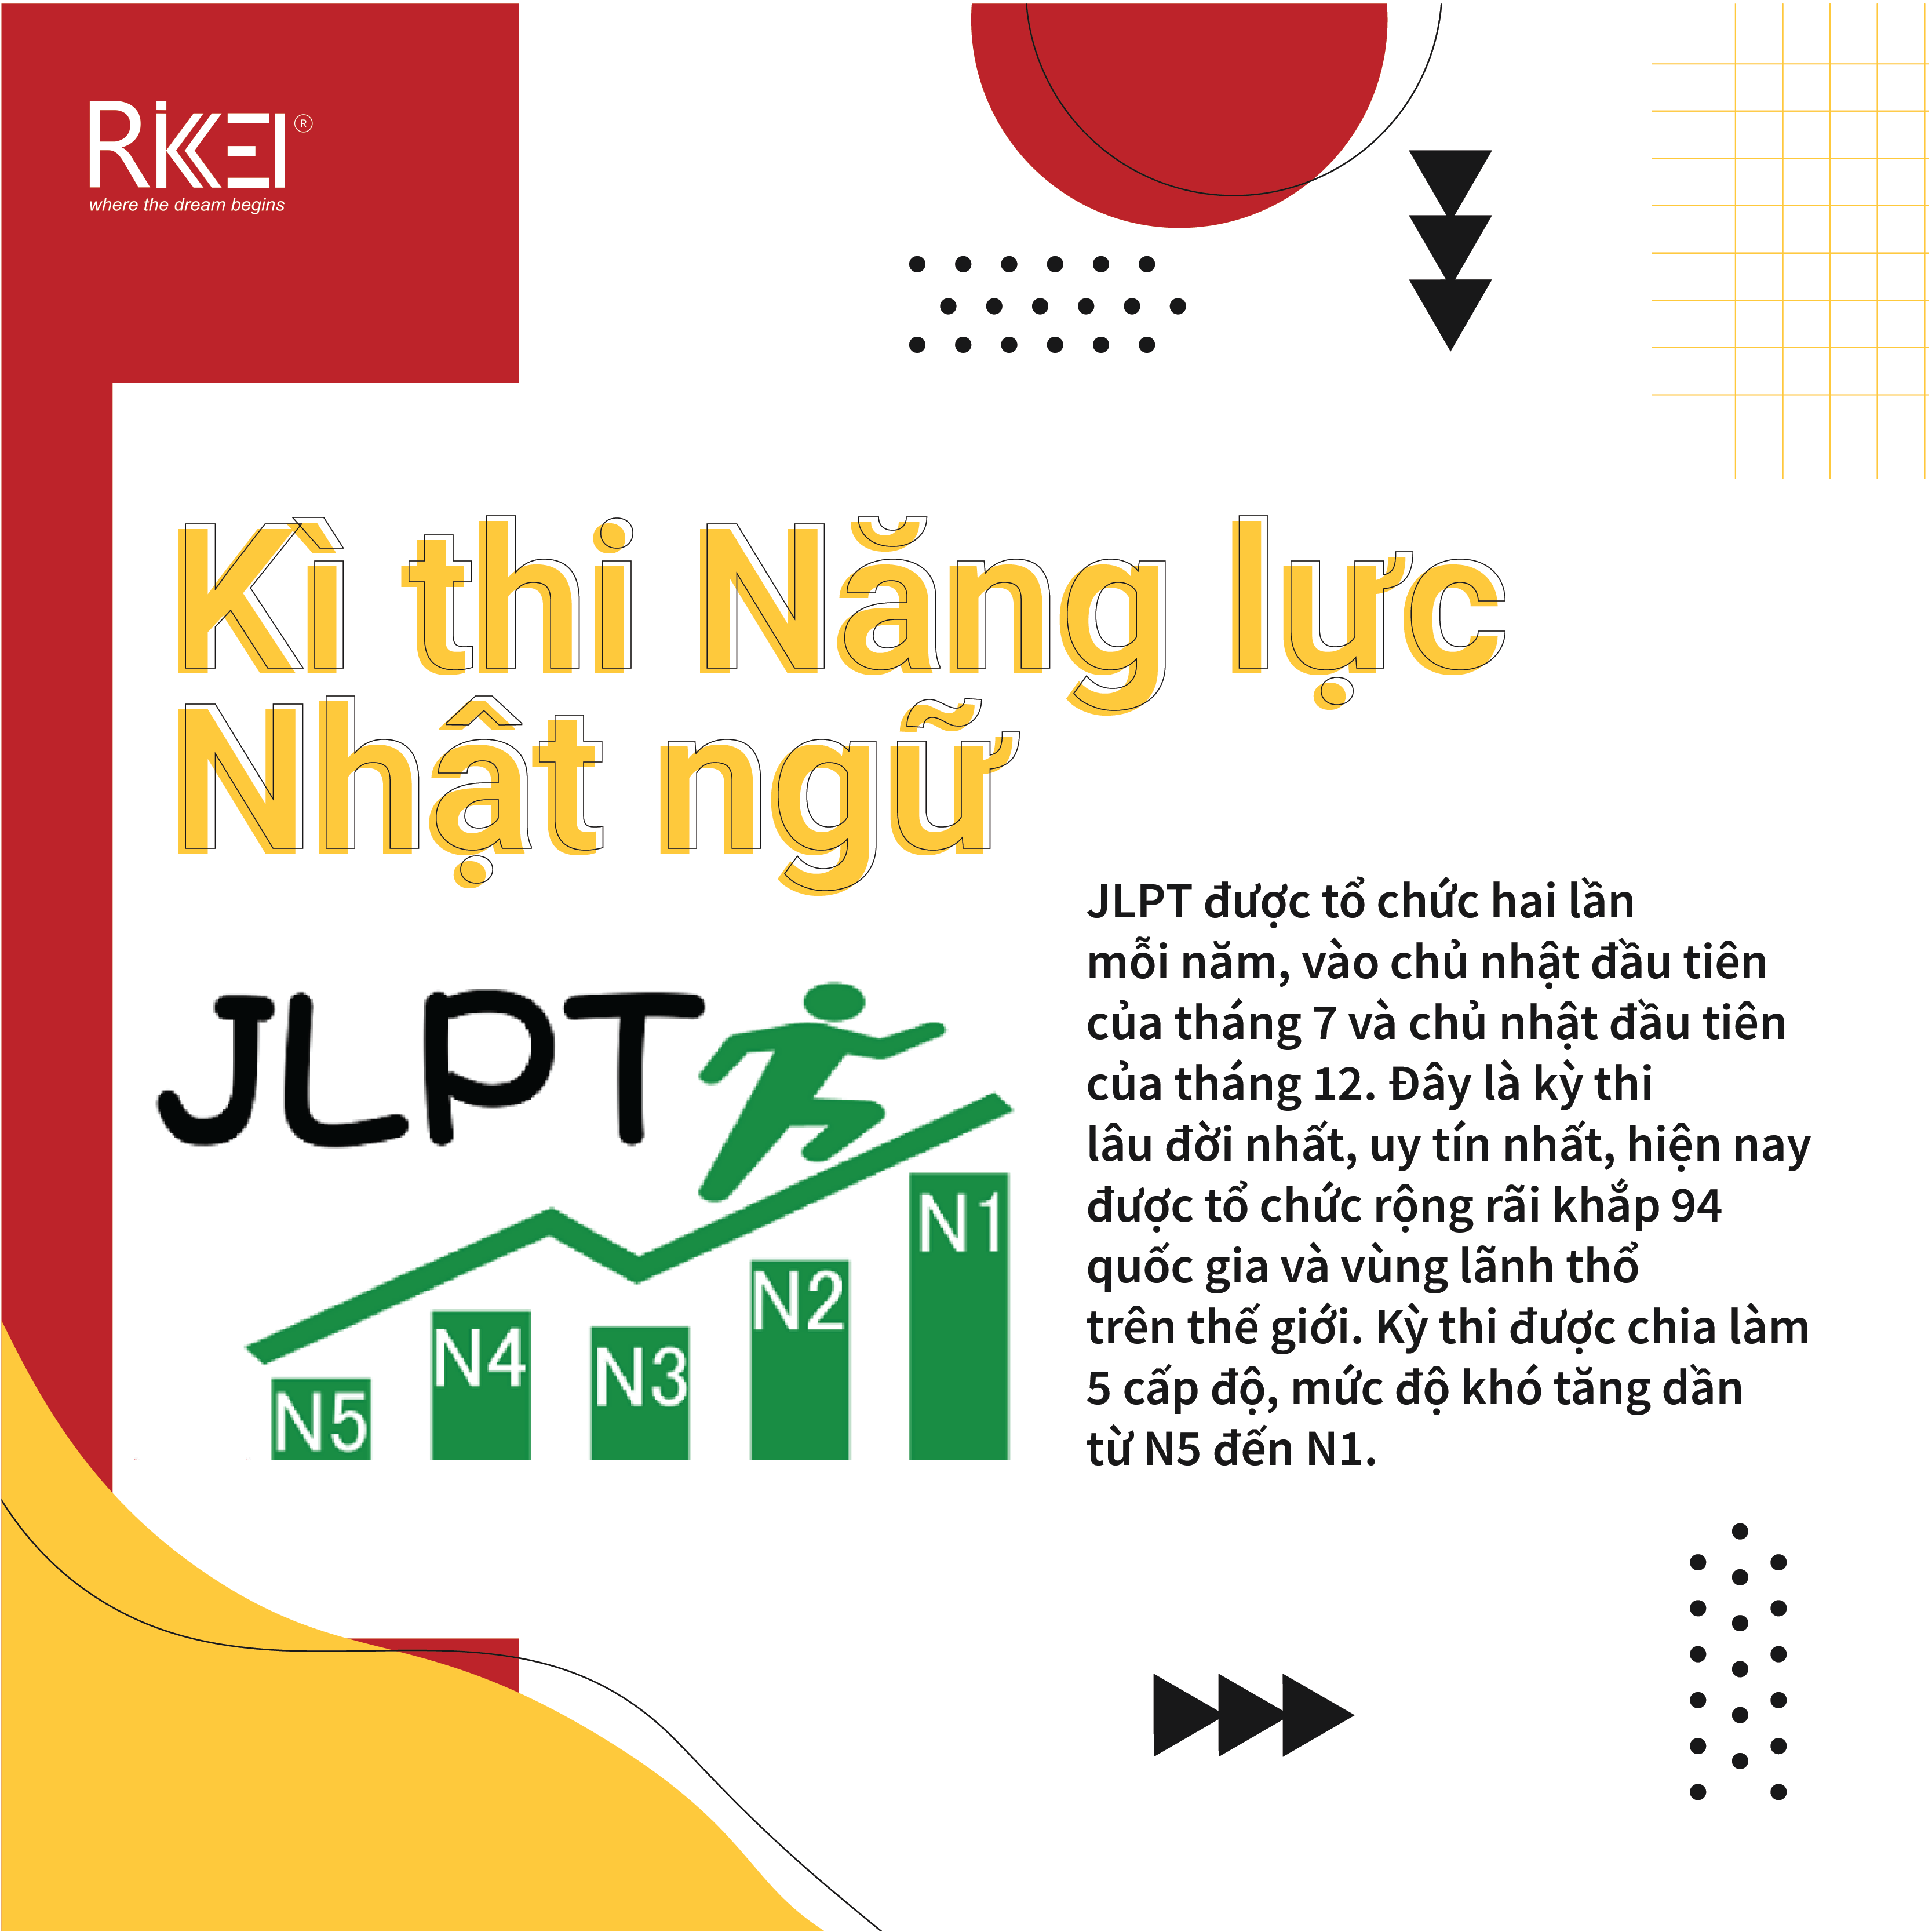 JLPT N1: Trong thời đại ngày nay, việc nắm vững tiếng Nhật là cực kỳ quan trọng để du học, kinh doanh hoặc làm việc tại Nhật Bản. JLPT N1 là bằng cấp chứng nhận khả năng tiếng Nhật của bạn. Xem những hình ảnh về kì thi này và hãy đăng ký tham gia để nâng cao trình độ tiếng Nhật của mình!